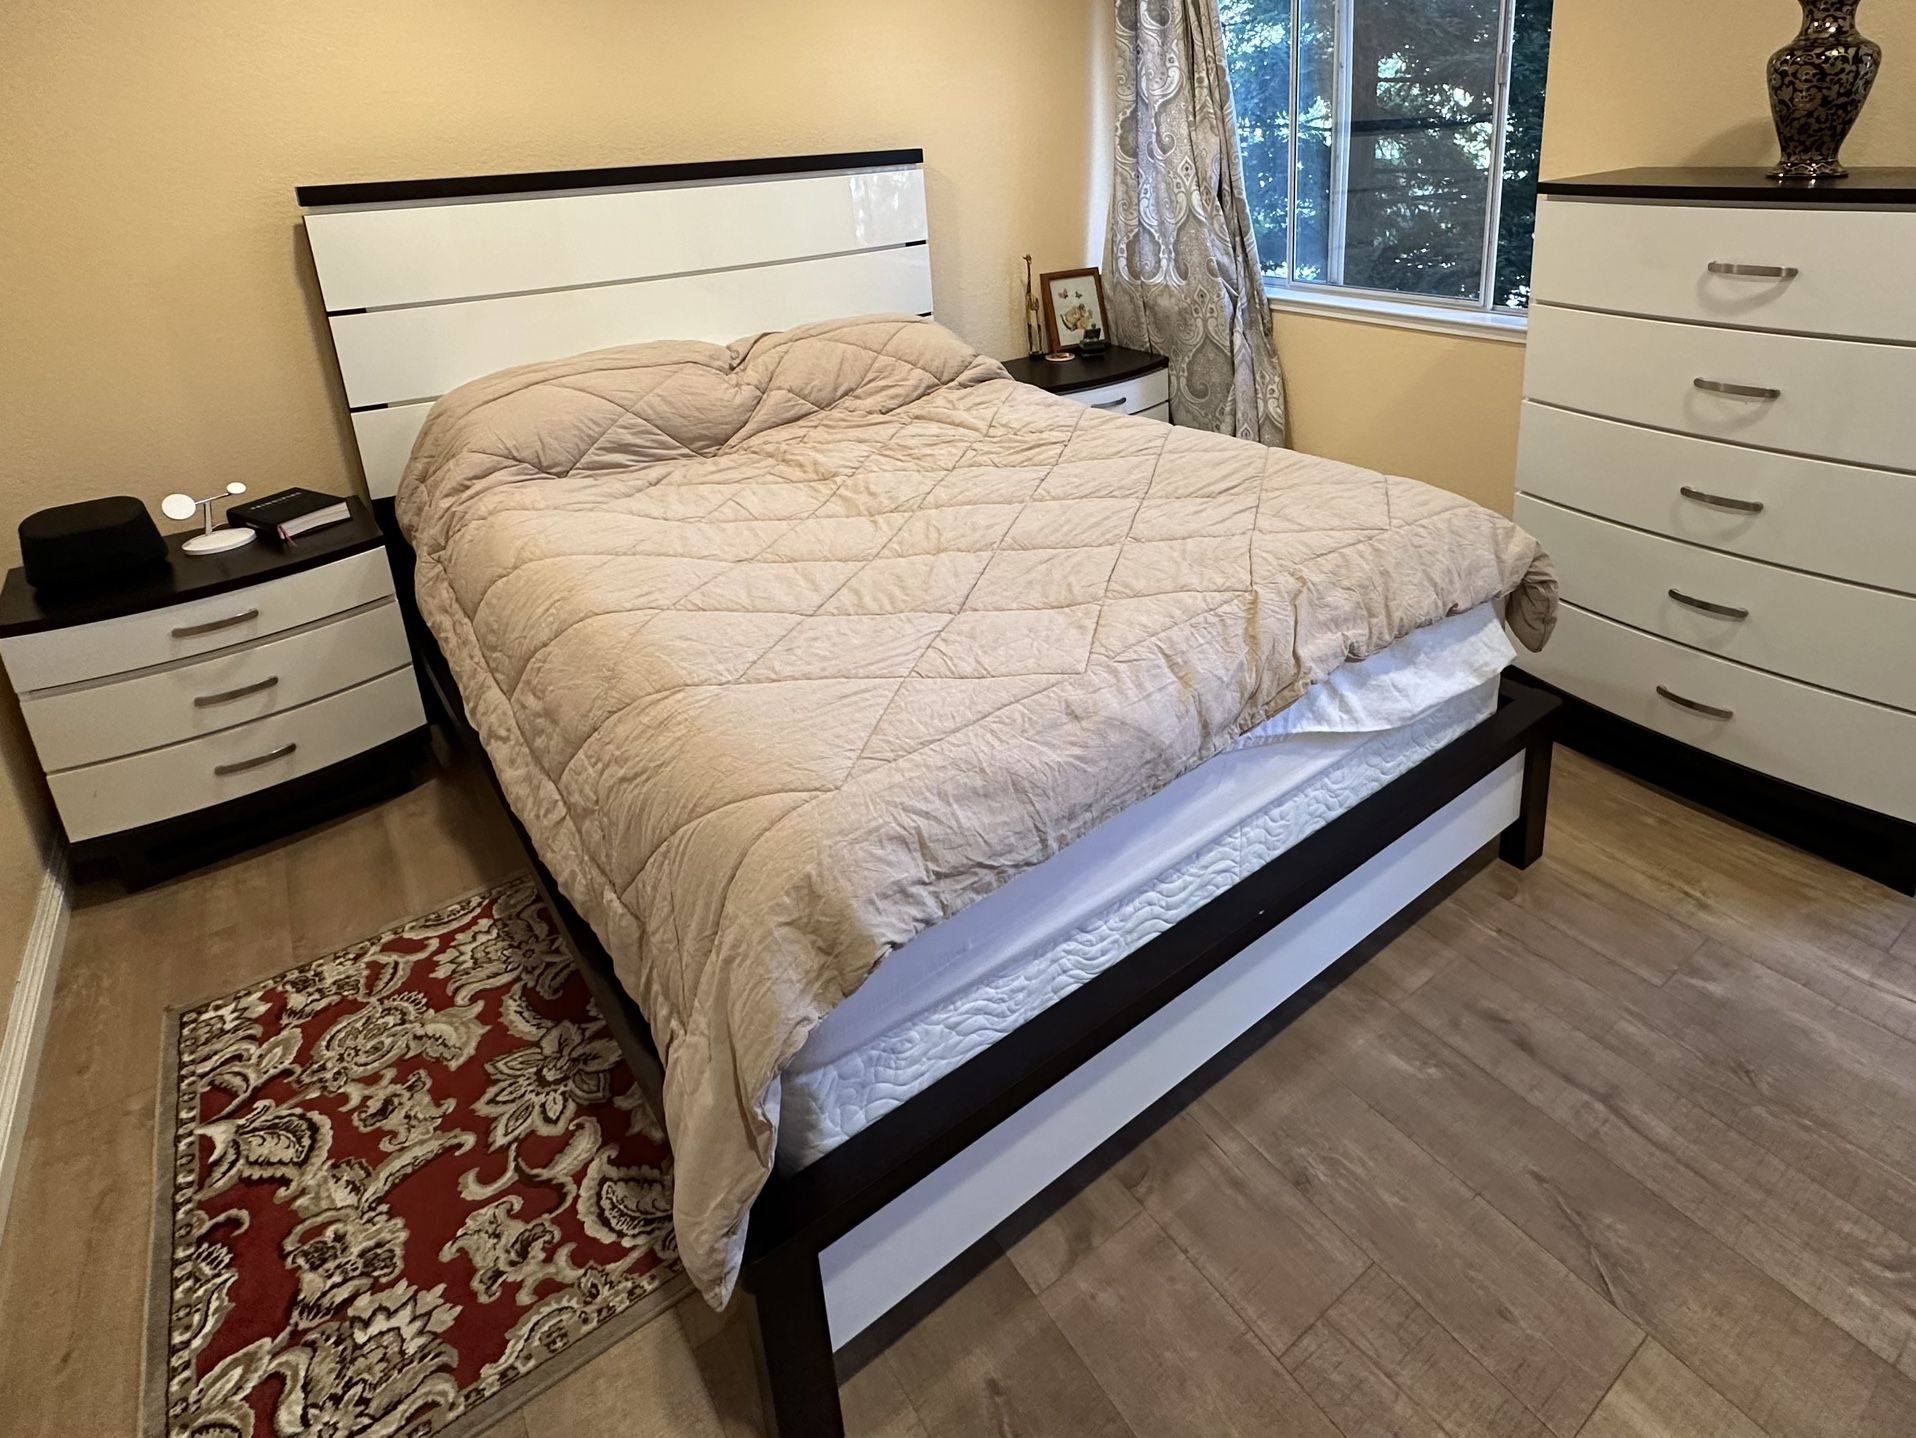 Queen Bedroom Set: Bedframe + 2x Nightstands + Dresser - Walnut/White